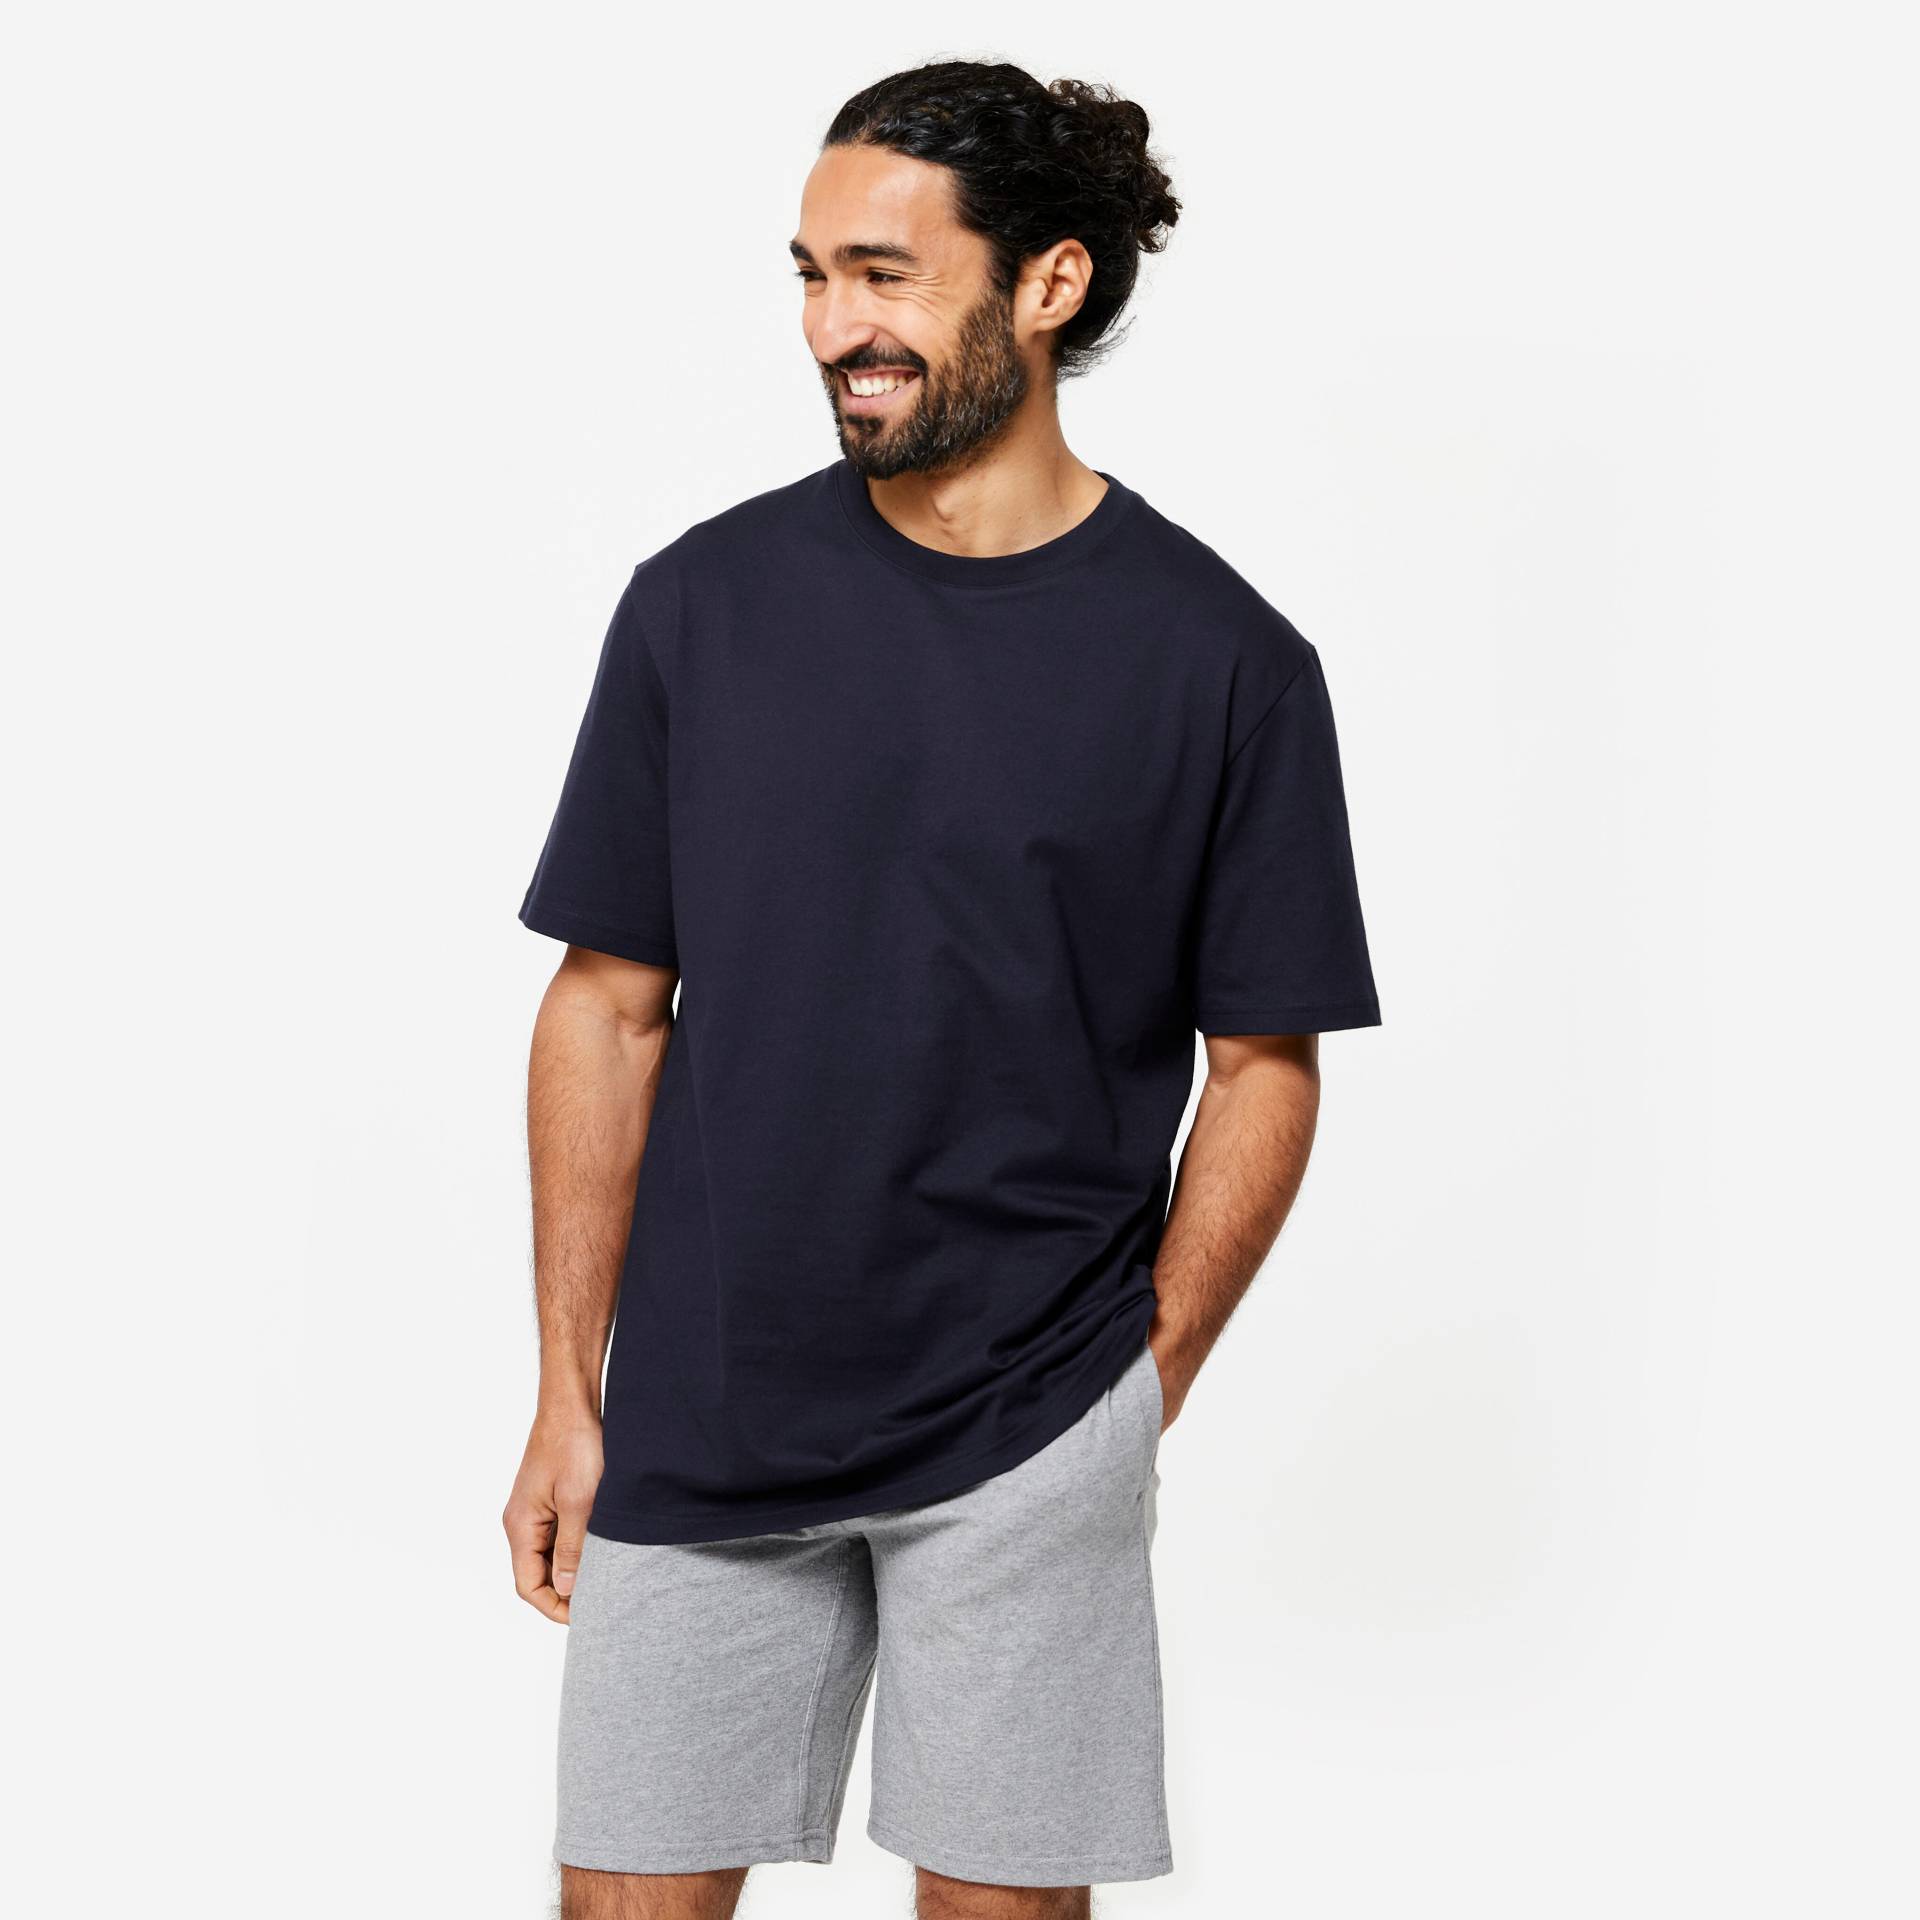 T-Shirt Herren - Essentials 500 dunkelblau von Domyos